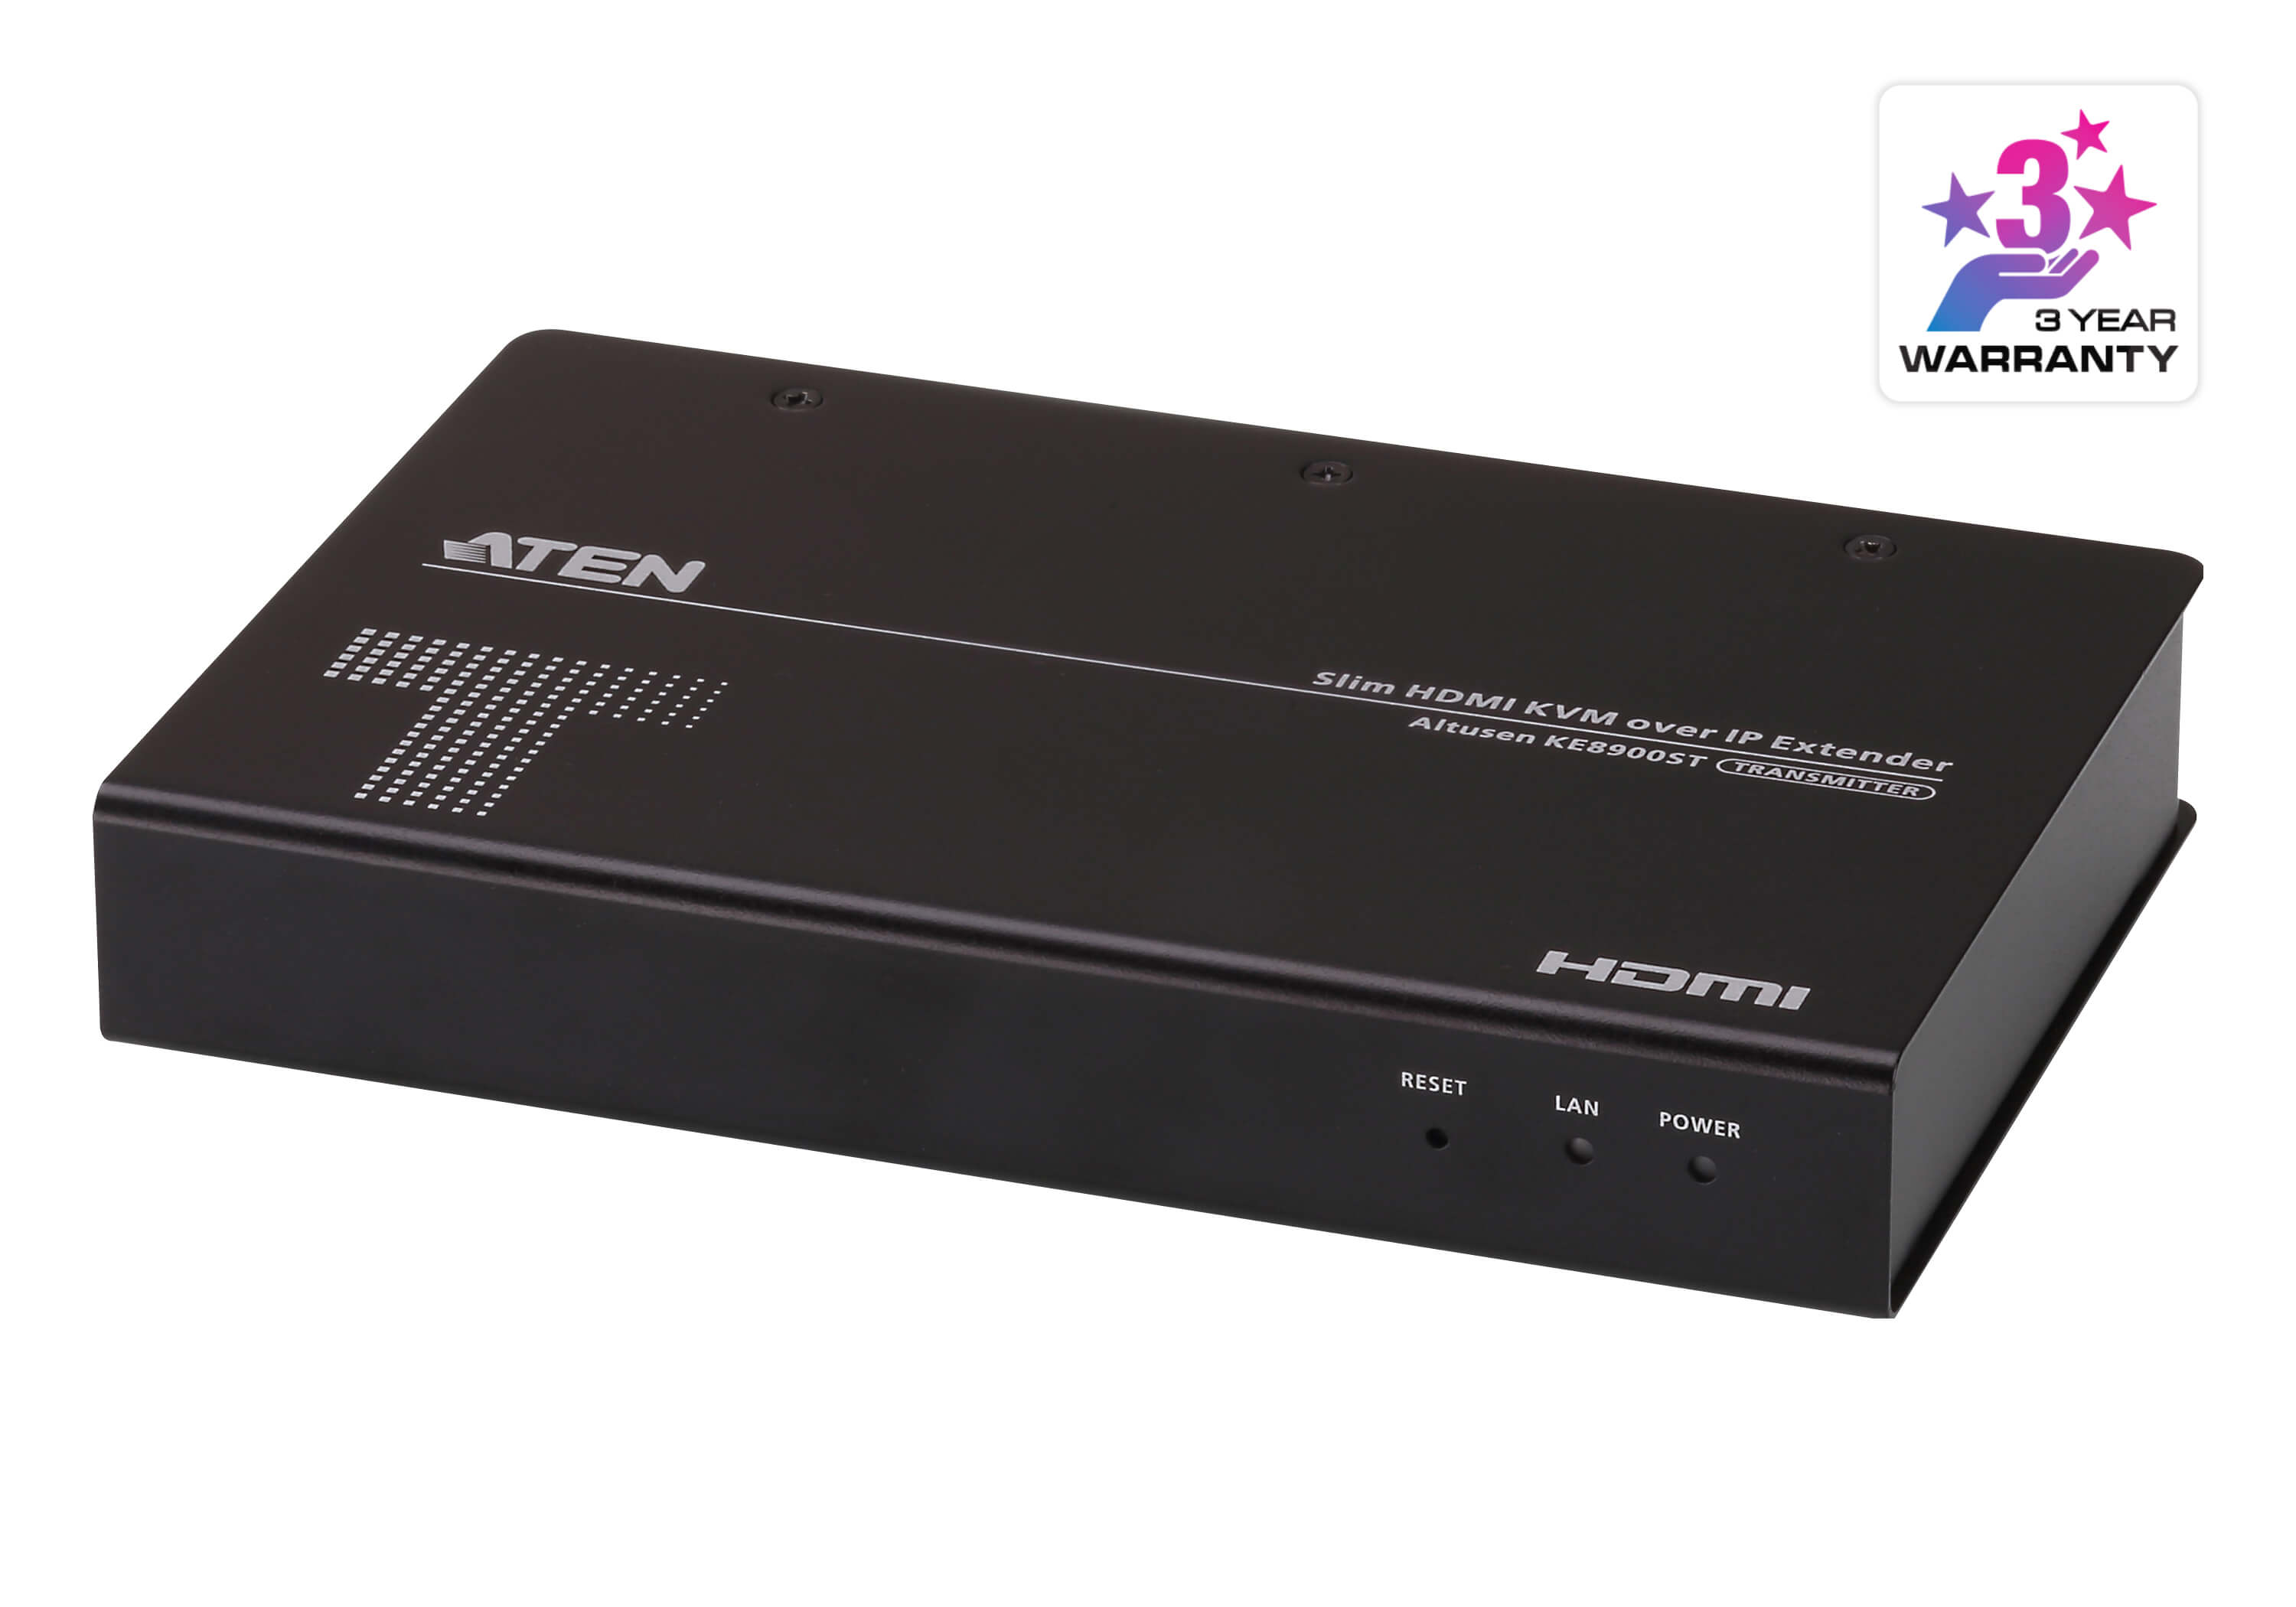 Удлинитель KVM (КВМ) ATEN KE8900ST, HDMI до 1920x1200, клавиатура USB, мышь USB, с доступом по IP (KE8900ST-AX-G)